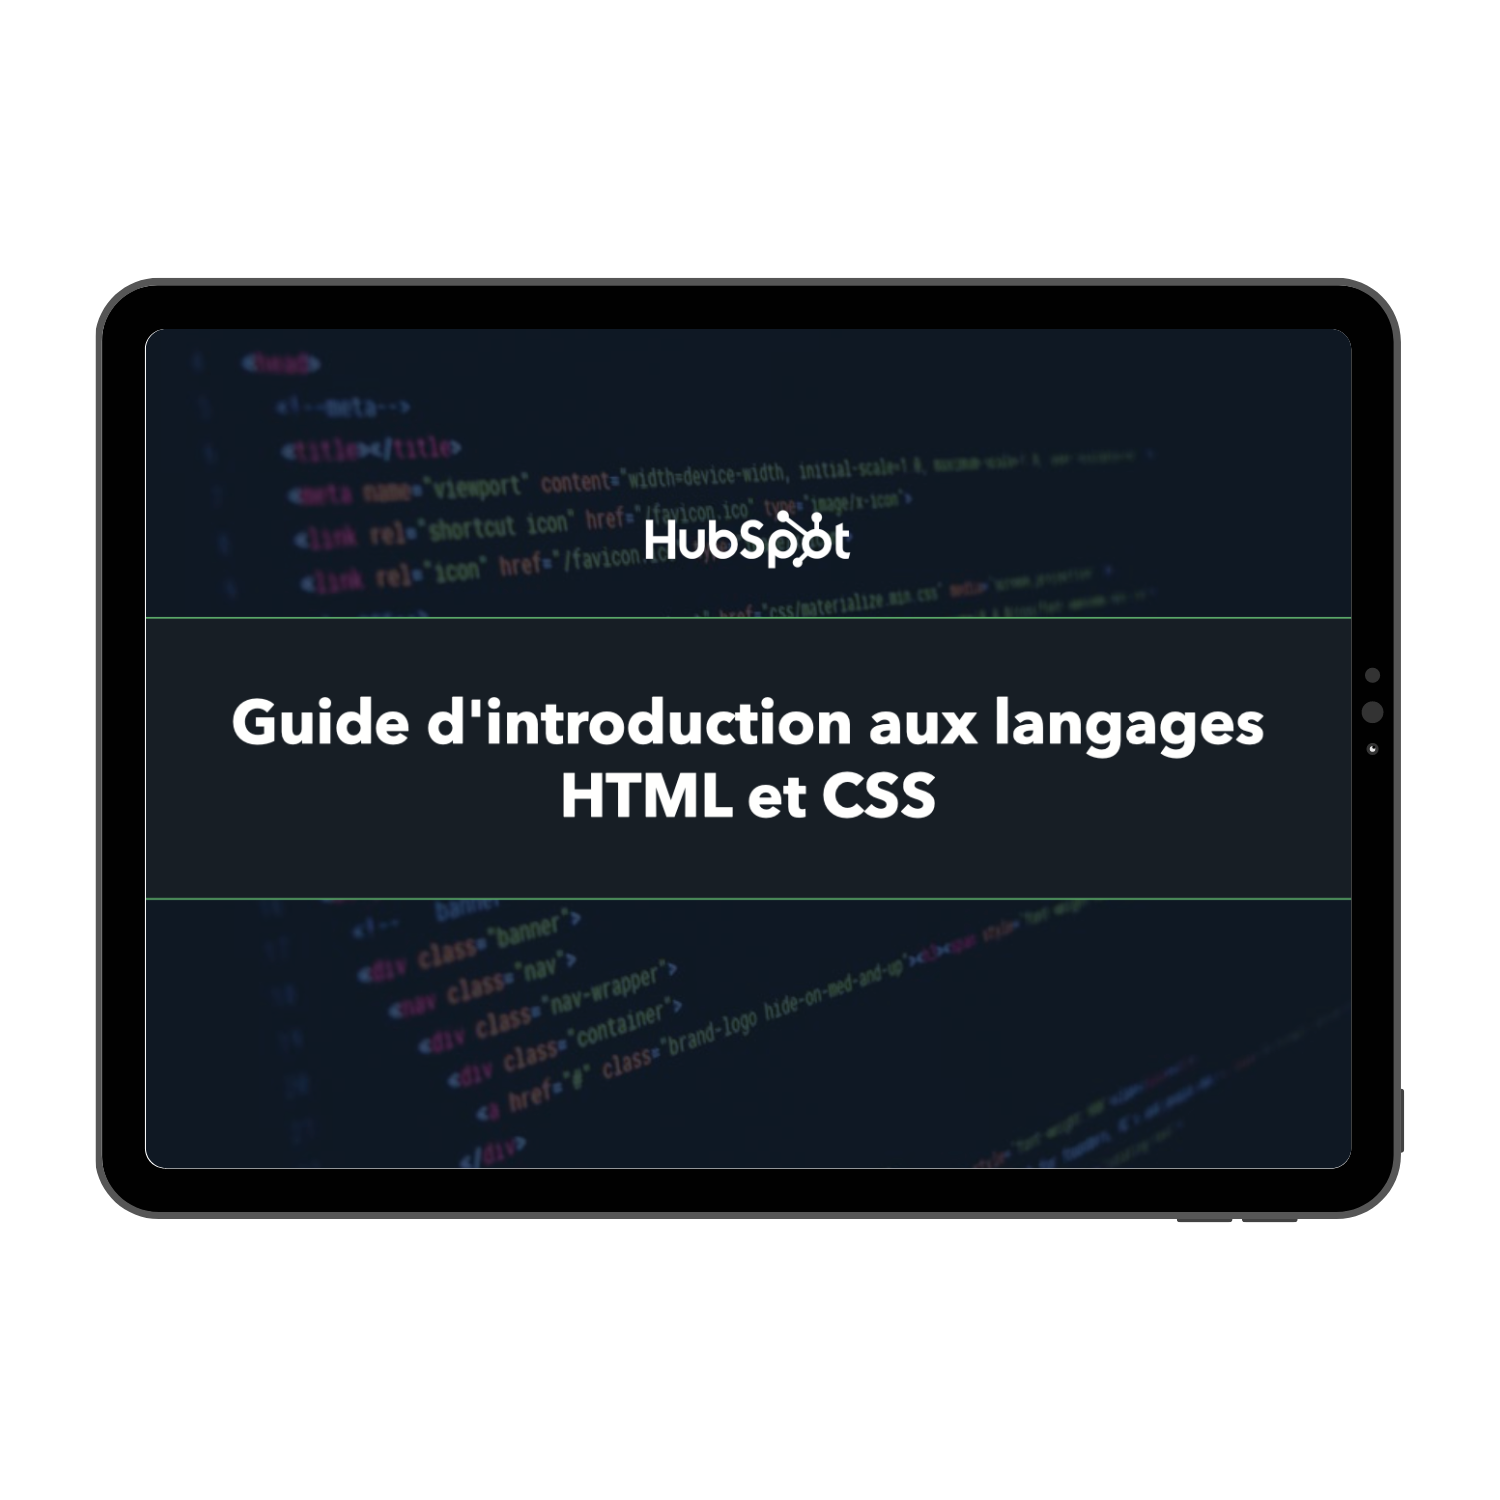 Guide d'introduction aux langages HTML et CSS